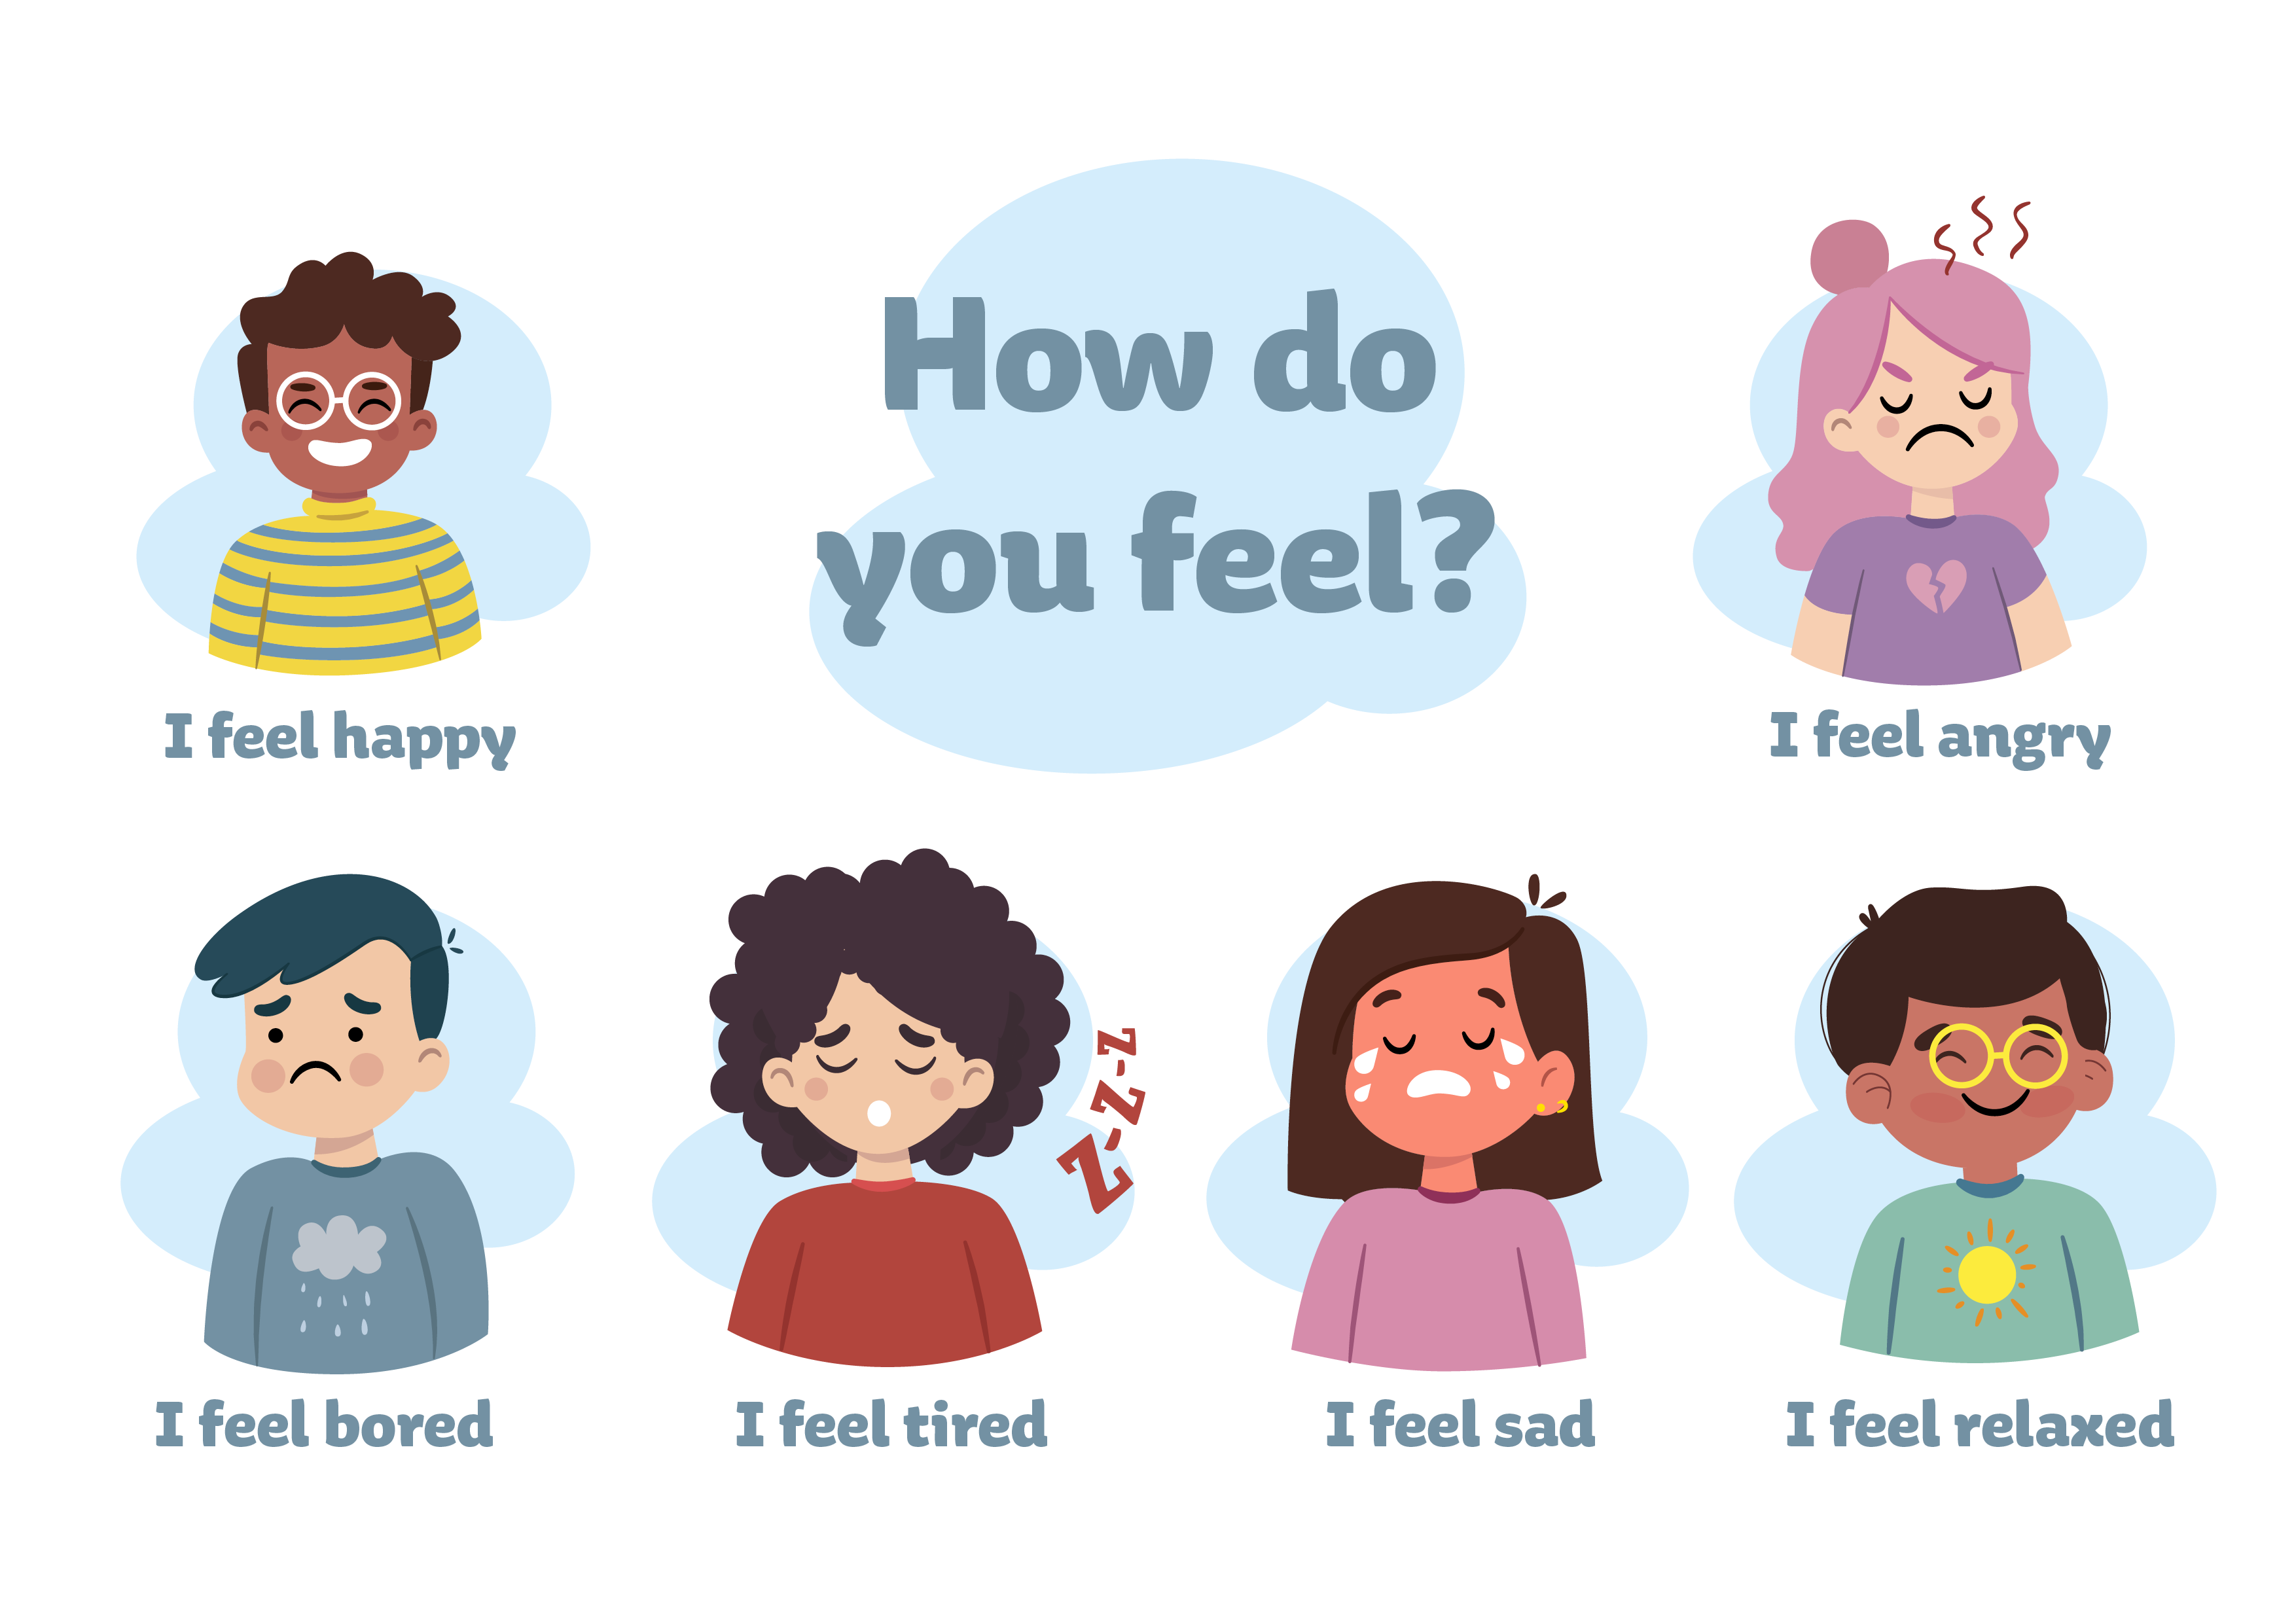 La imagen muestra dibujos de varios niños representando diferentes emociones